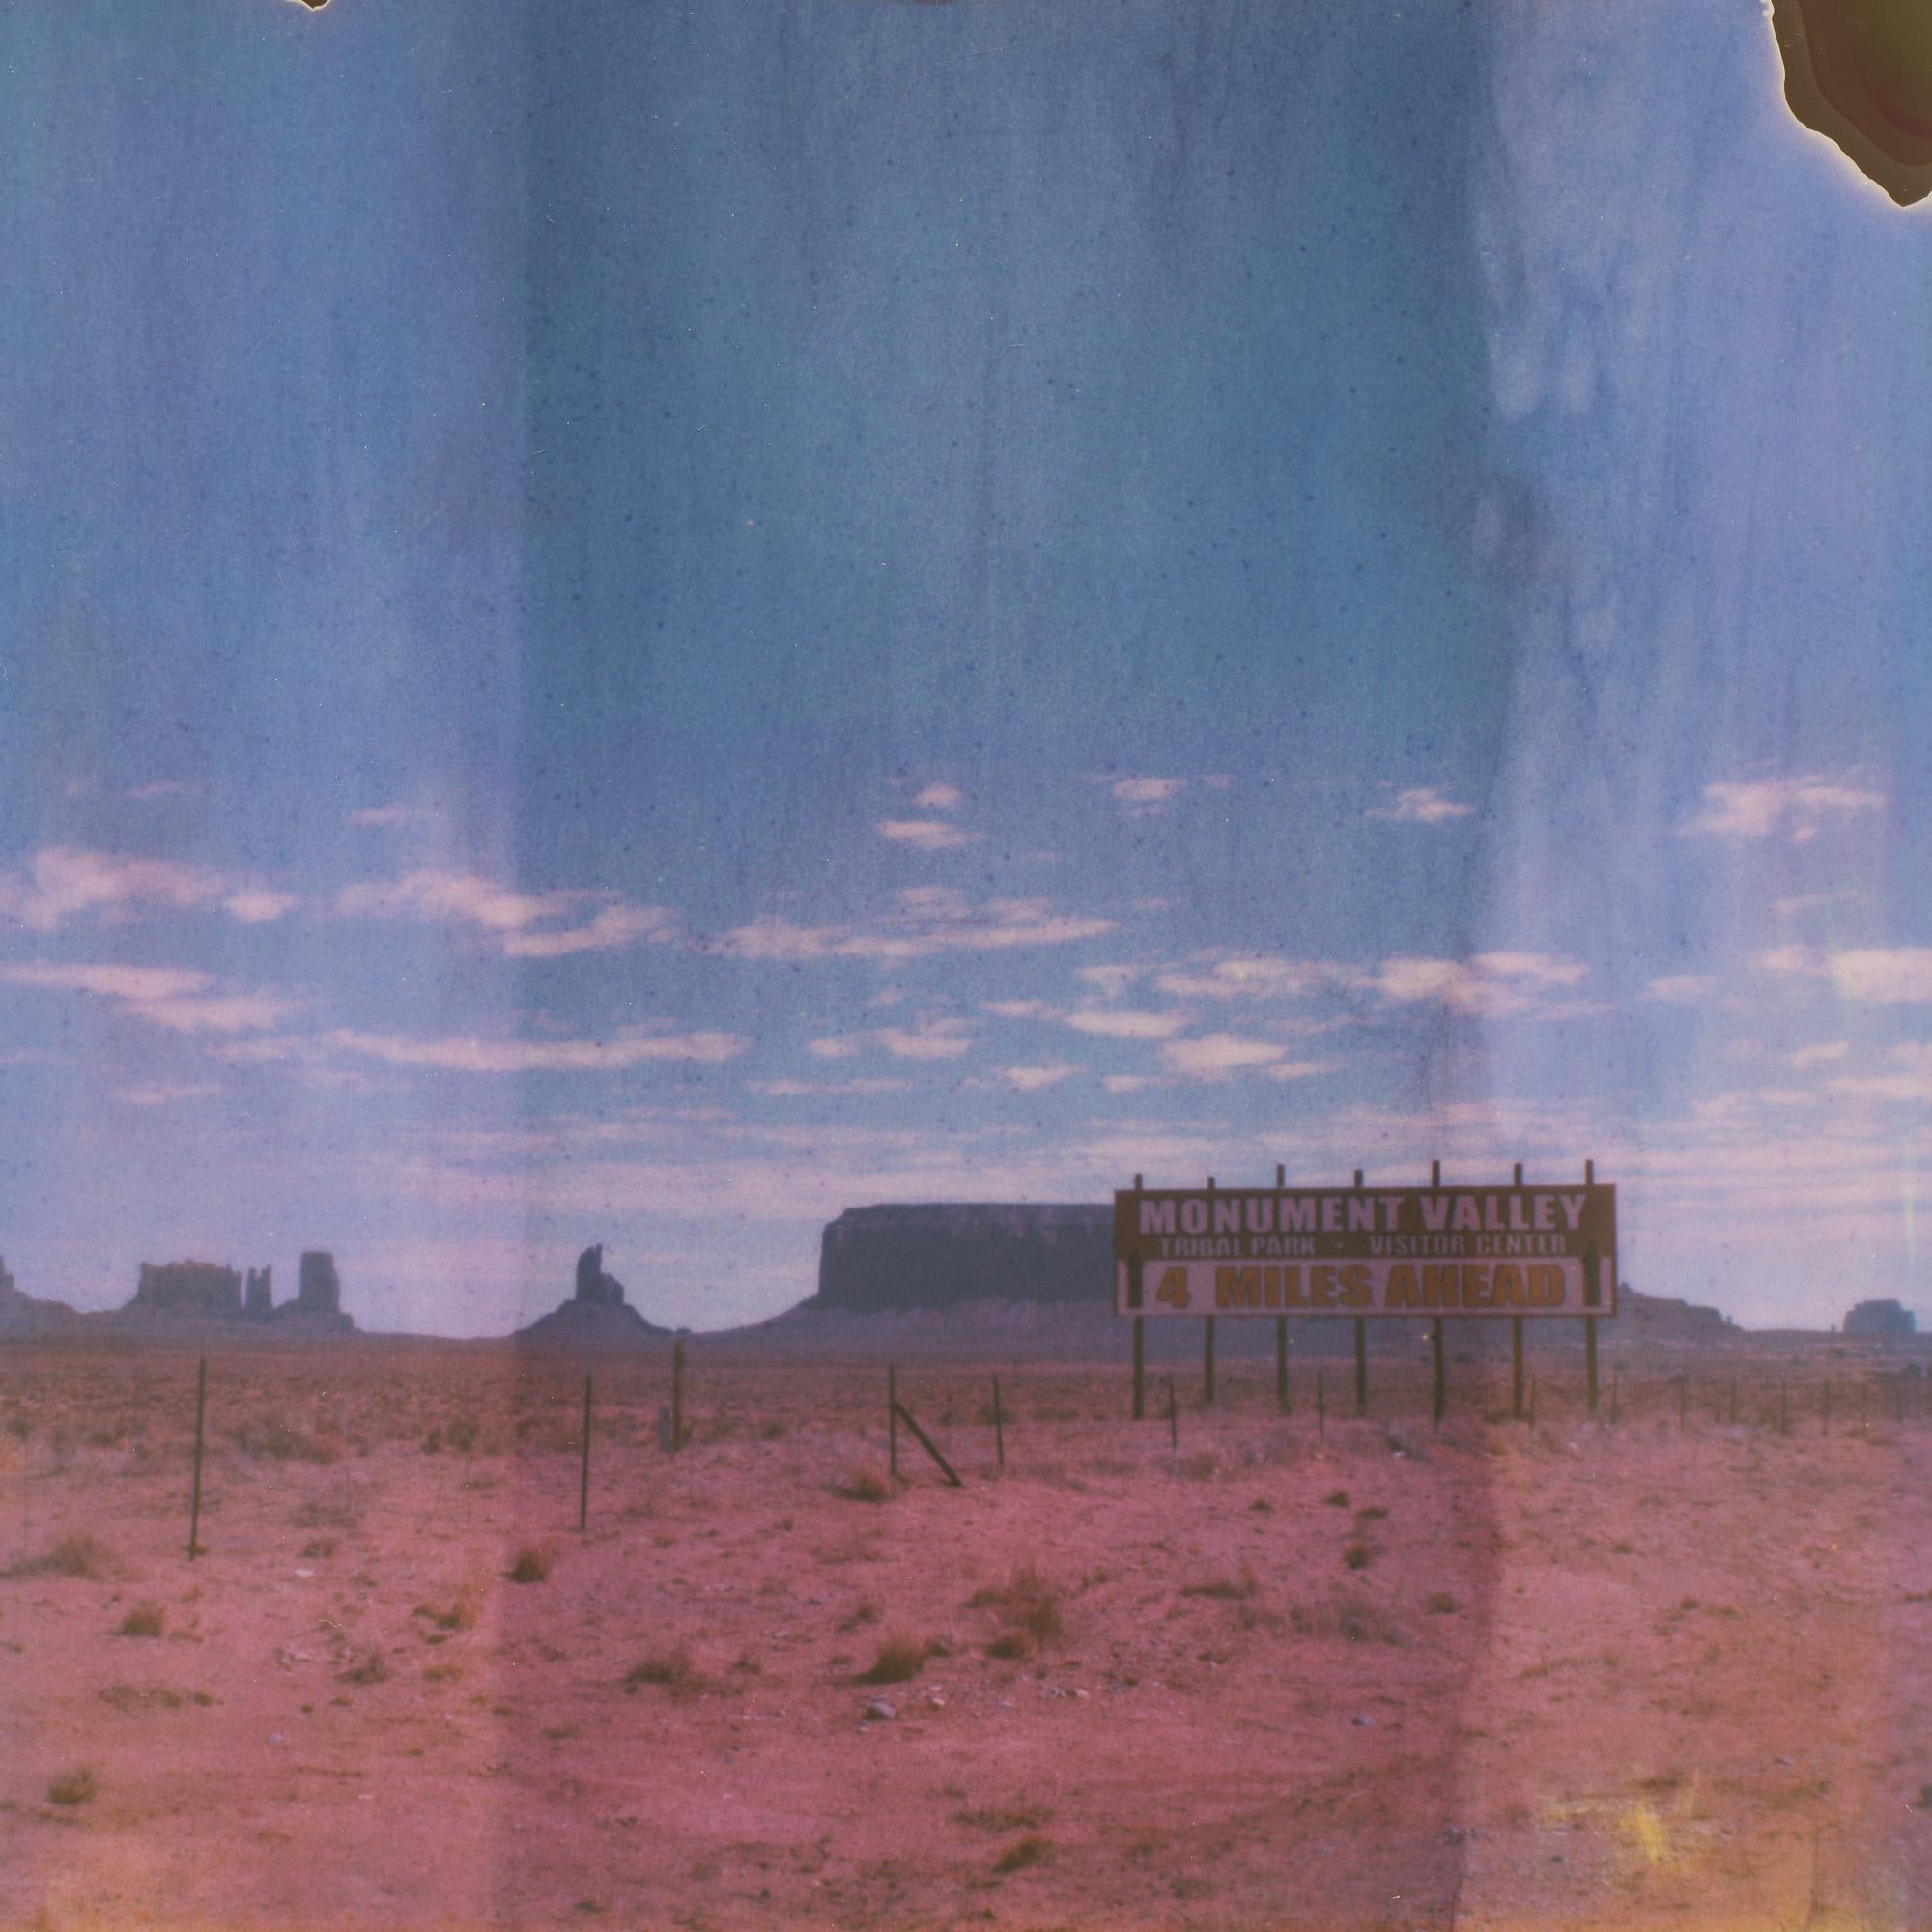 Promised Land, 21. Jahrhundert, Polaroid, Landschaftsfotografie, Farbe, Zeitgenössisch